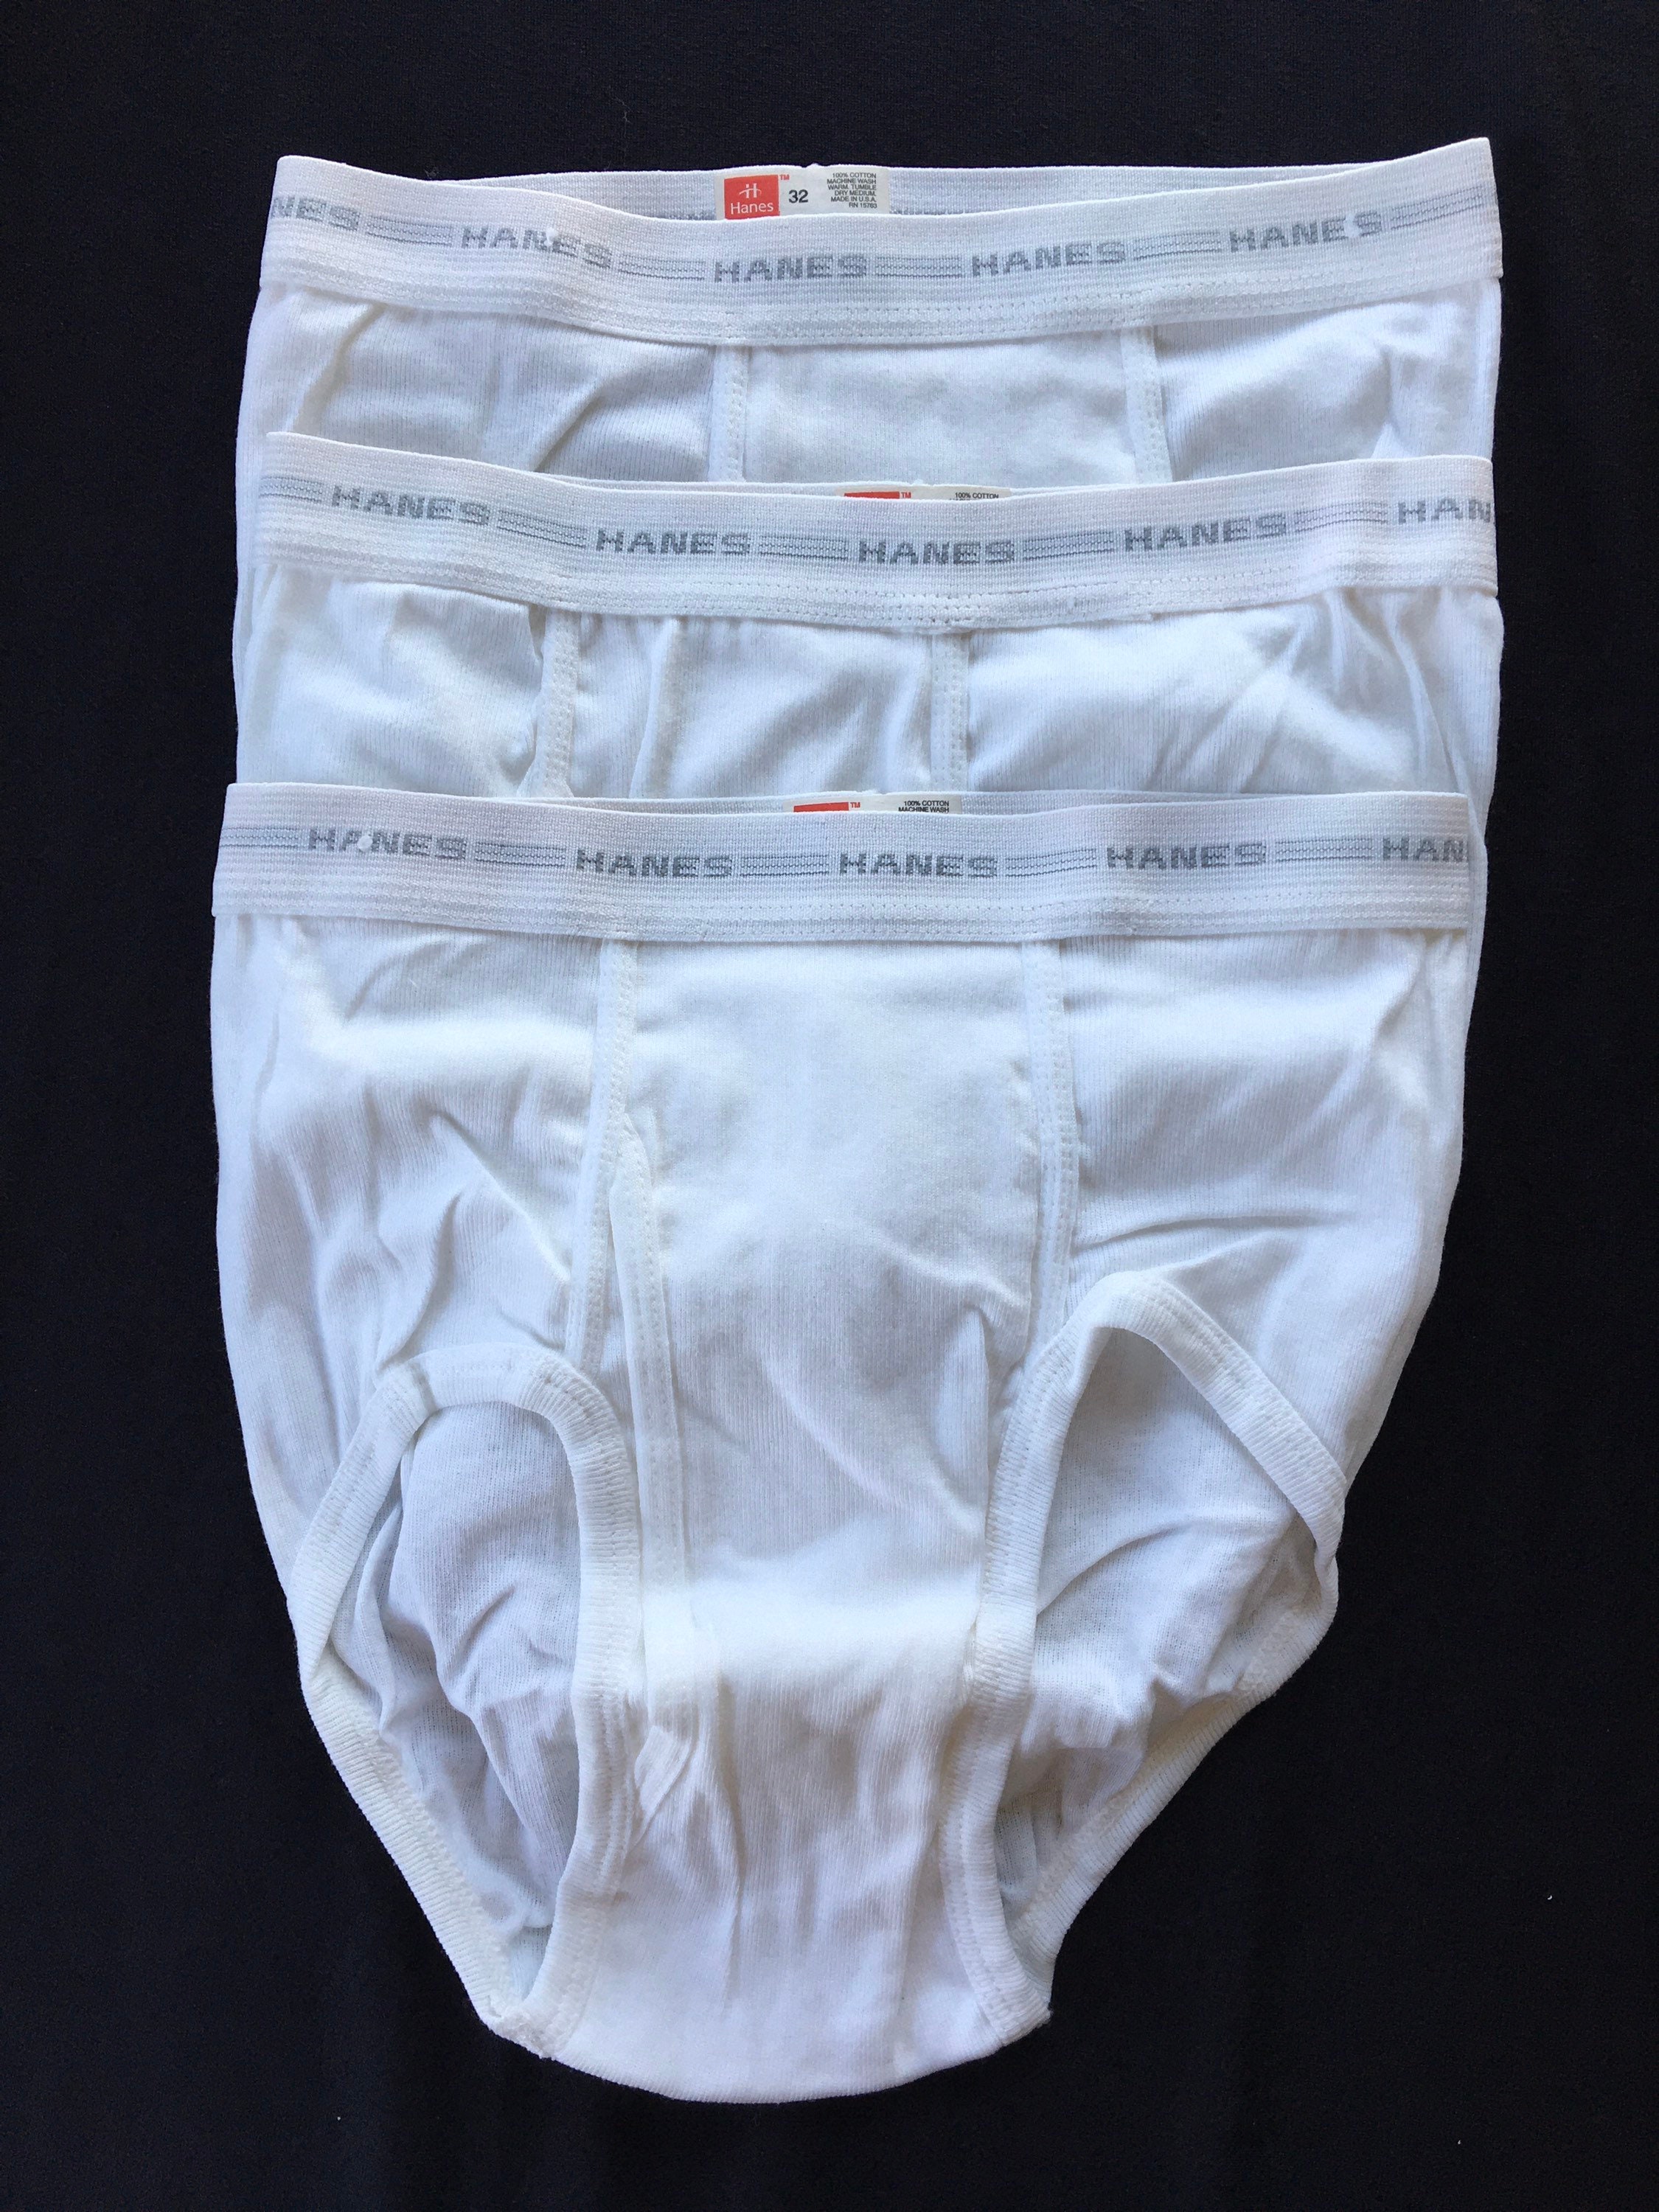 Vintage Hanes Briefs Cotton Underwear Tighty Whities Mens Size 32